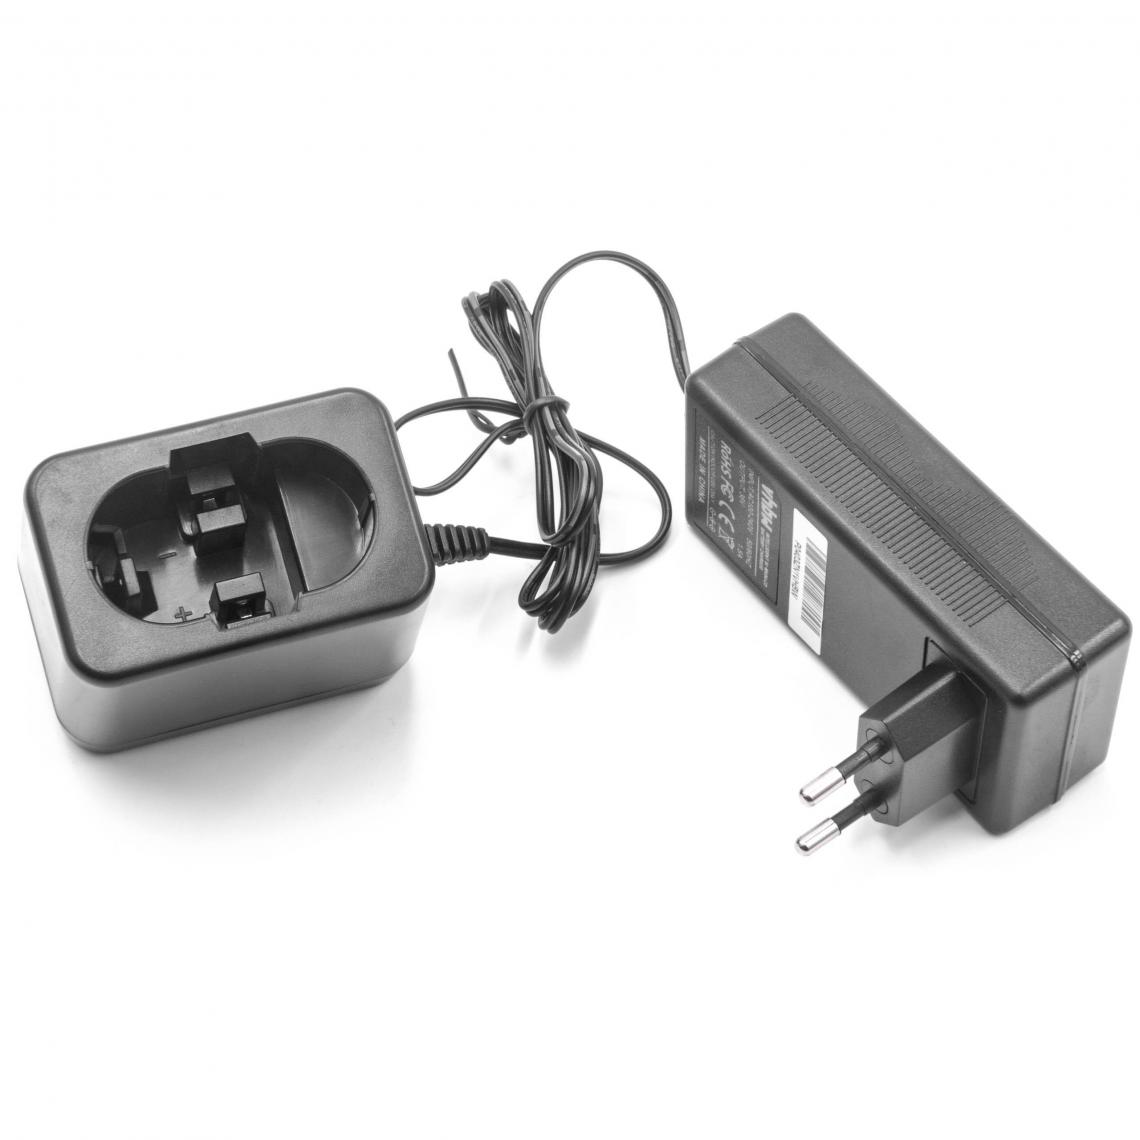 Vhbw - vhbw Chargeur compatible avec Bosch Angle Exact 17, 22, 23, 29, 30, 40, 50, 60, 75 batteries d'outils - 7,2V - 24V - Accessoires vissage, perçage